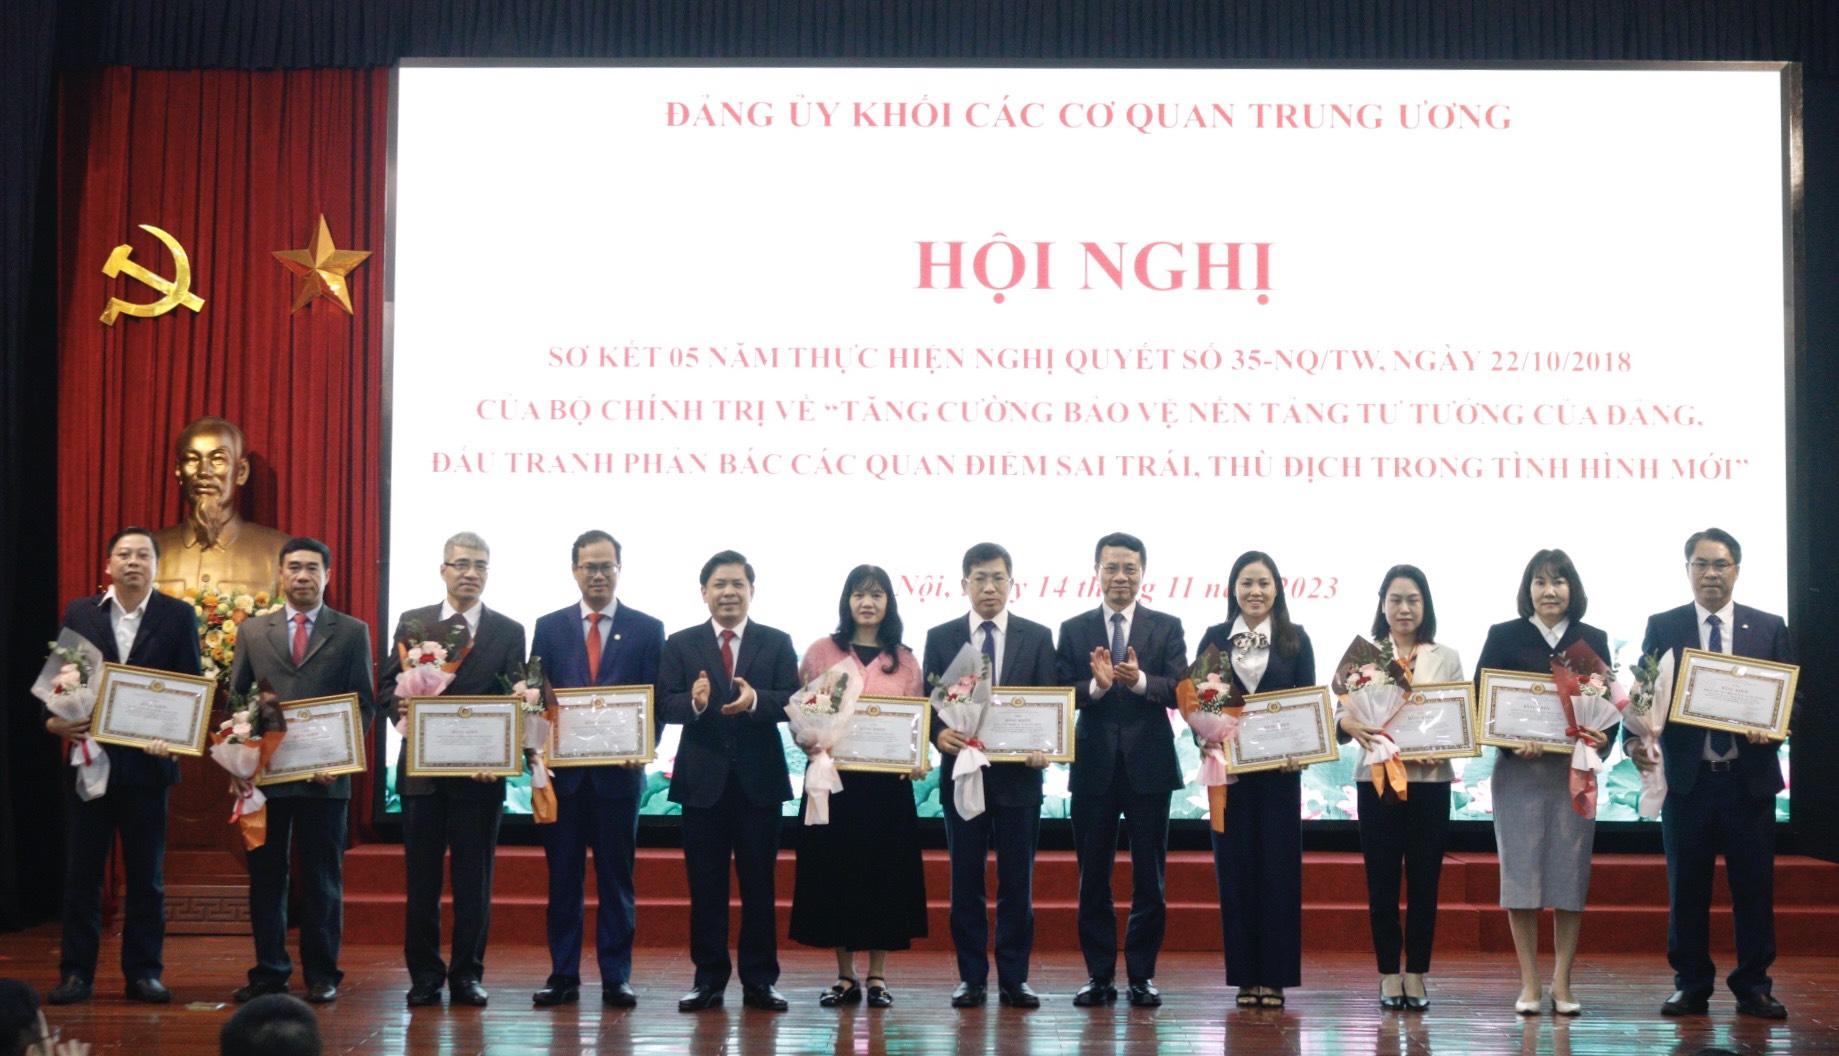 Đ/c Phan Thăng An, Phó Trưởng Ban Tổ chức Trung ương, Phó Bí thư Đảng ủy cơ quan (ngoài cùng, bên phải) đại diện Đảng ủy cơ quan nhận bằng khen tại Hội nghị.